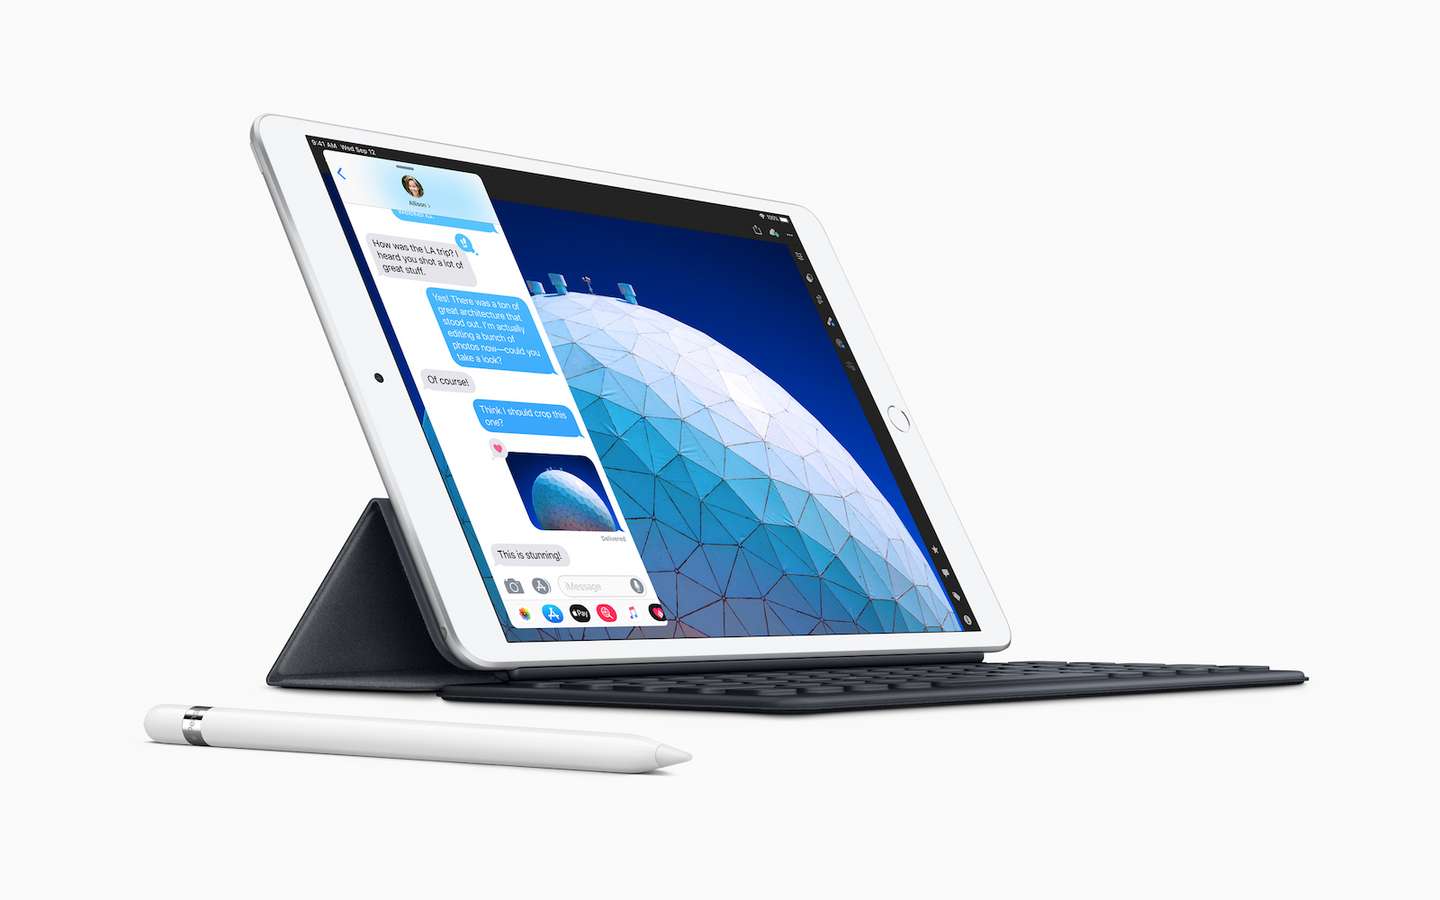 Apple présente le nouvel iPad 9,7 pouces compatible avec l'Apple Pencil -  Apple (FR)